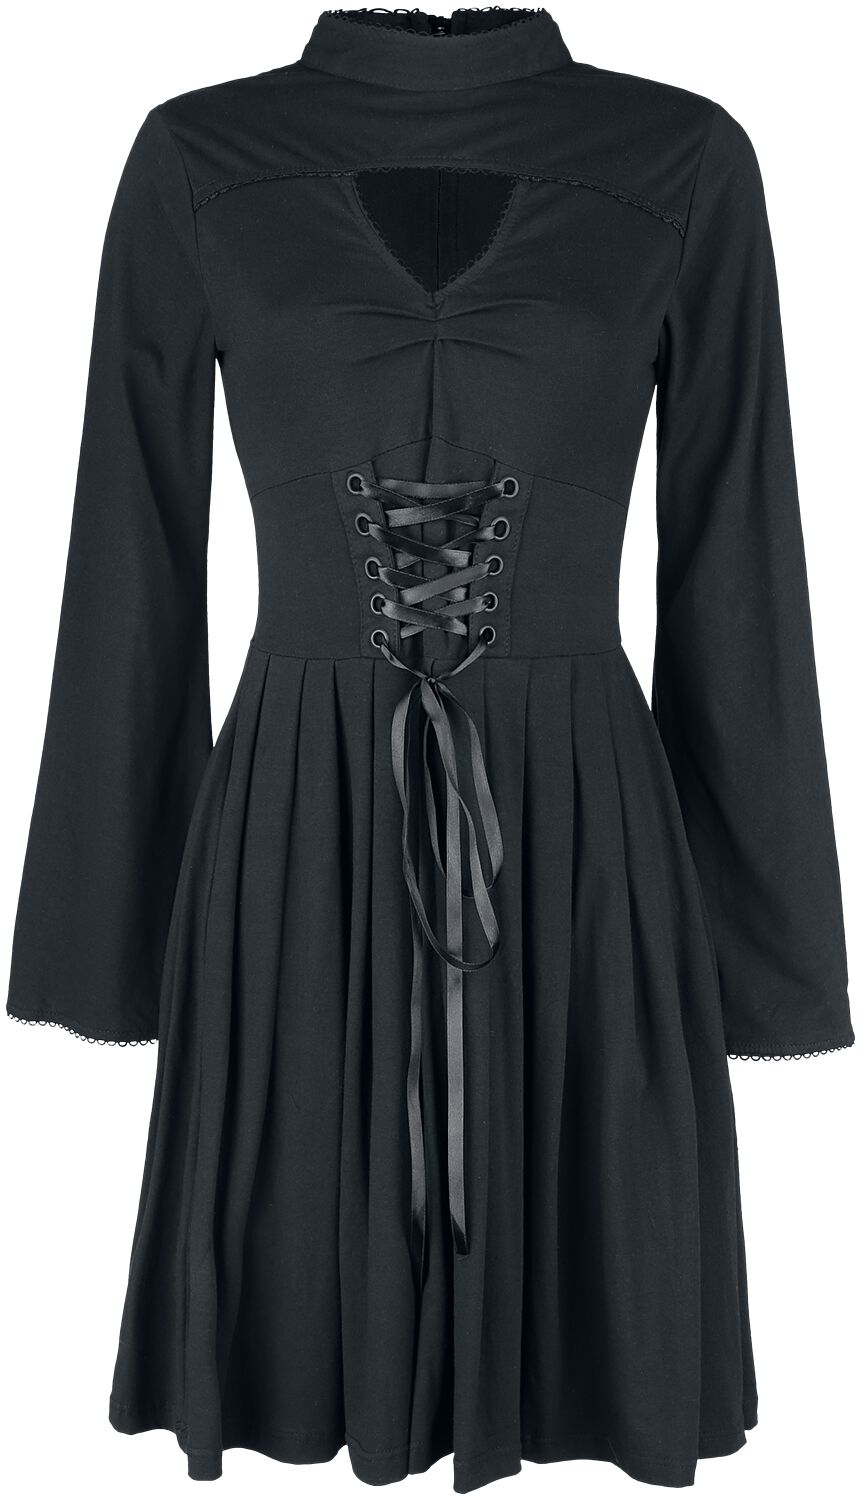 Poizen Industries - Gothic Kleid knielang - Stranger Dress - S bis 4XL - für Damen - Größe L - schwarz